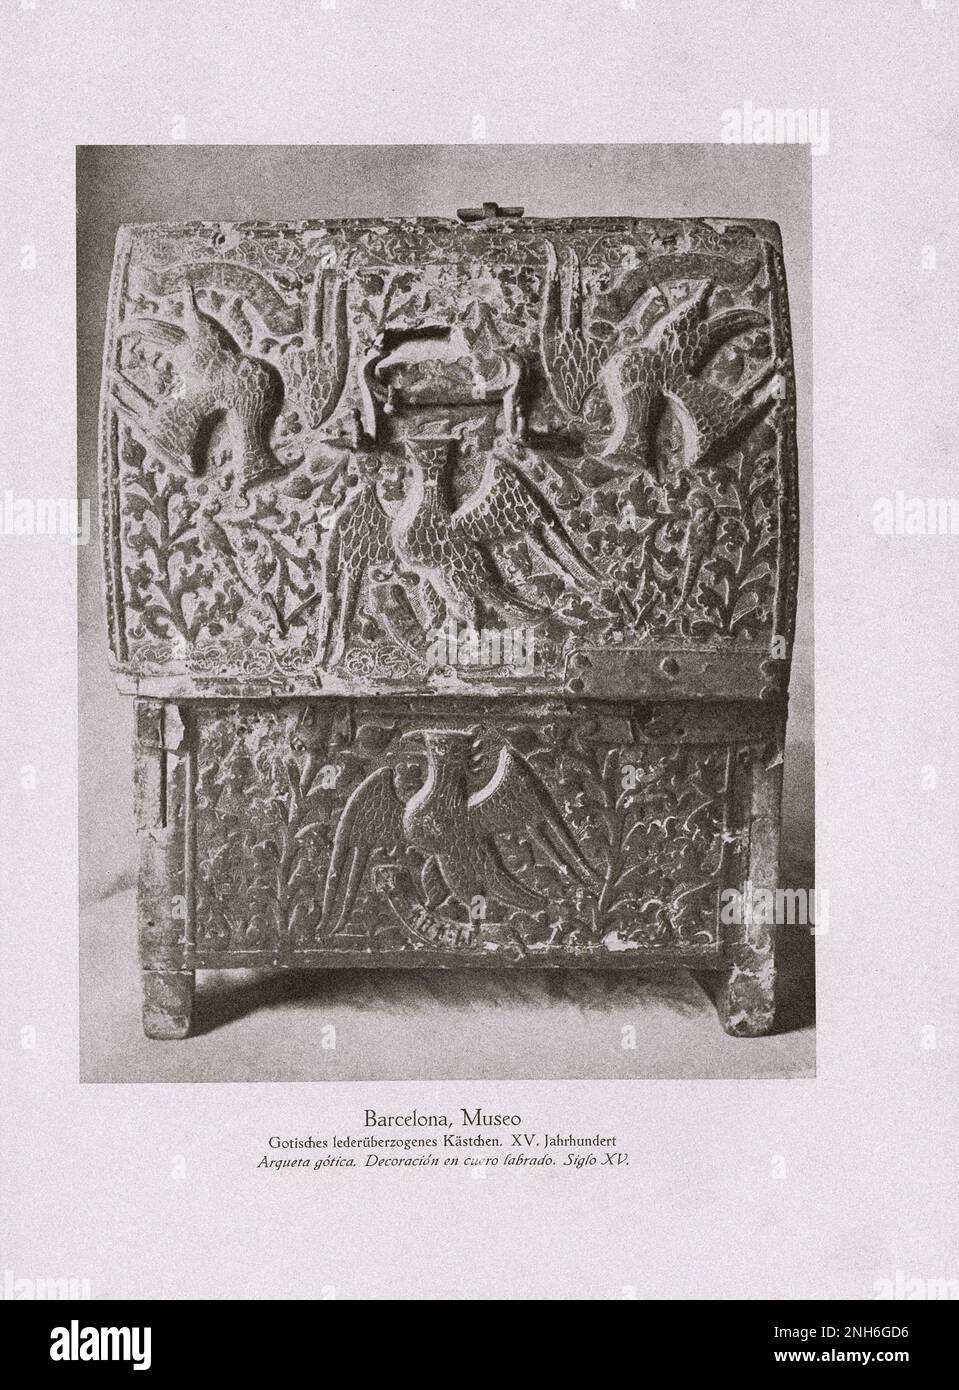 Art de la vieille Espagne. Photo vintage de cuir gothique boîte couverte. Musée à Barcelone boîte en cuir gothique. XVIe siècle Banque D'Images